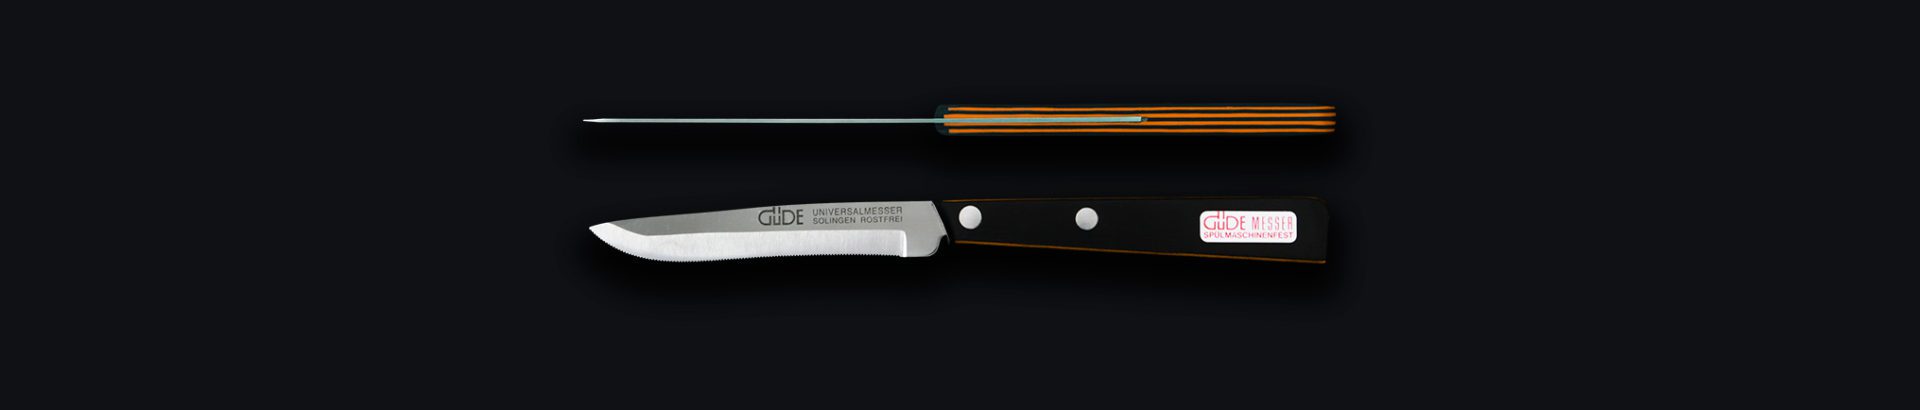 Güde Universalmesser Serie Steakmesser 9300/11 11 cm 